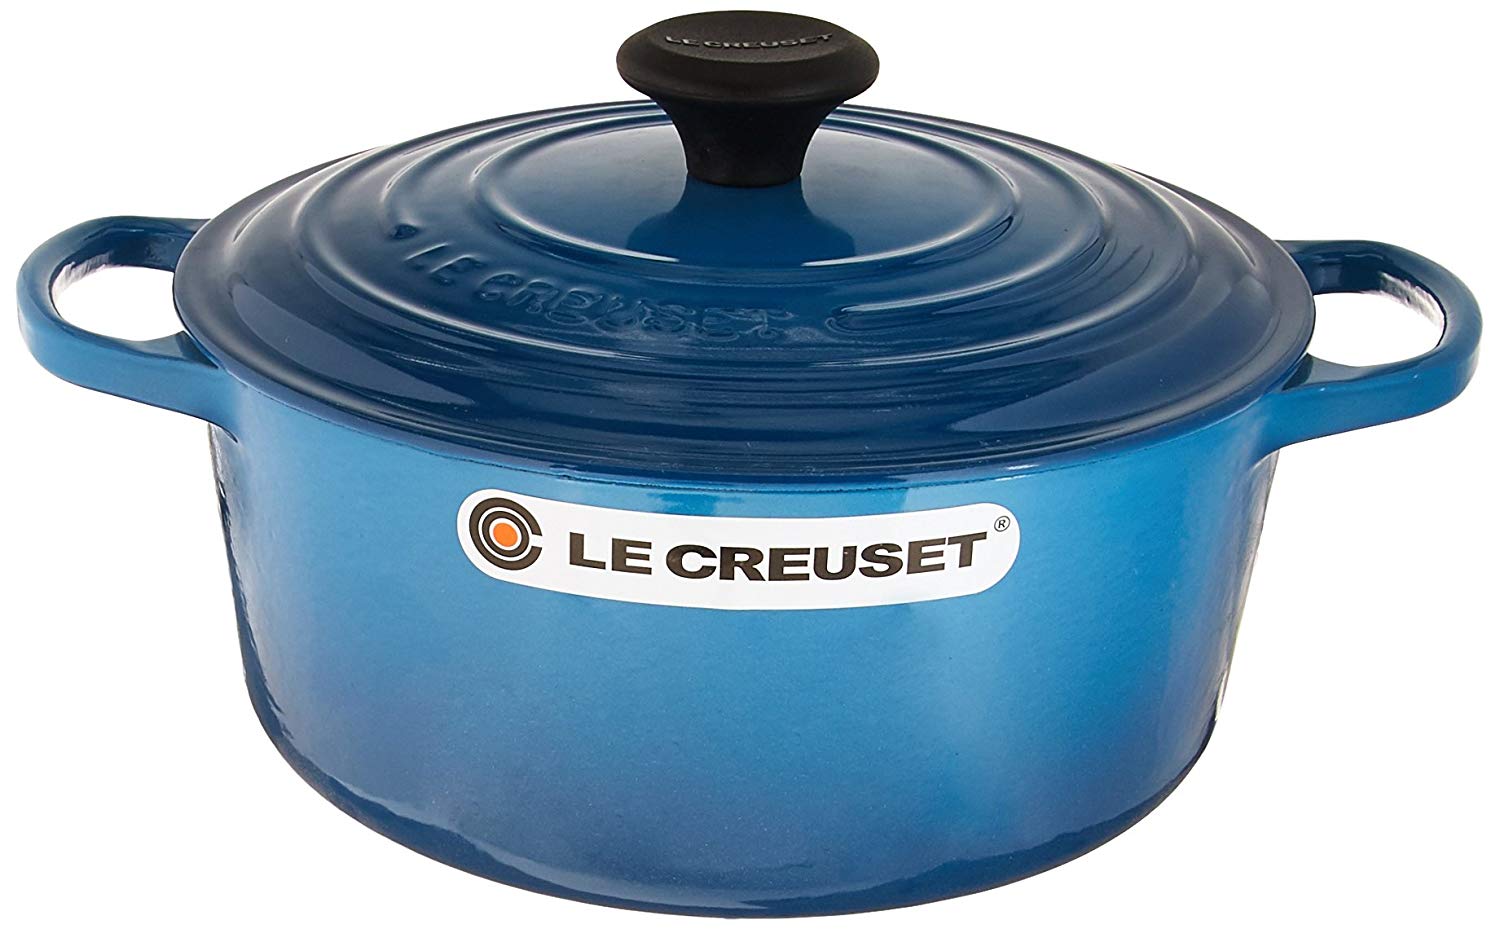 Le Creuset 7.25-Quart Signature Cast Iron Round Dutch Oven - Rhone